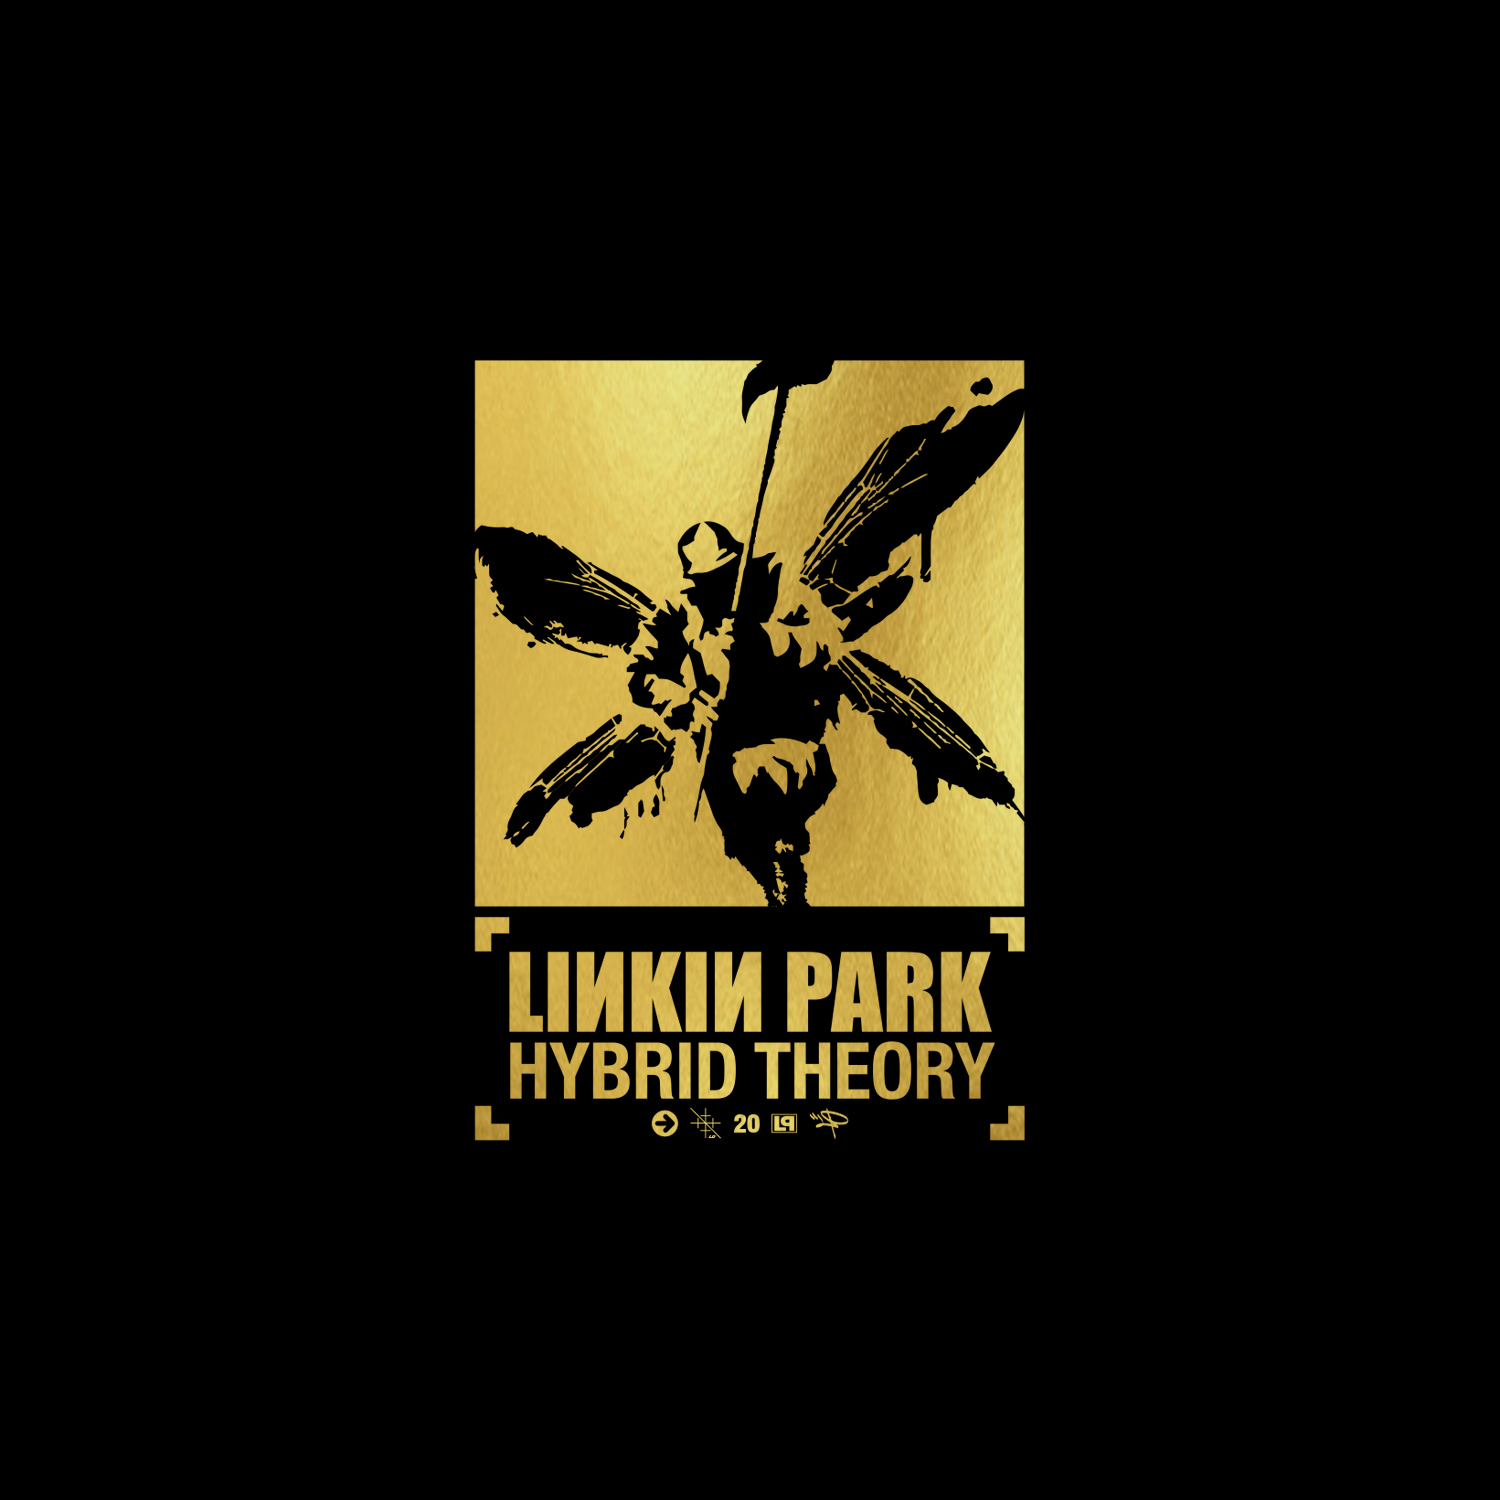 Linkin Park Hybrid Theory Logo Generator